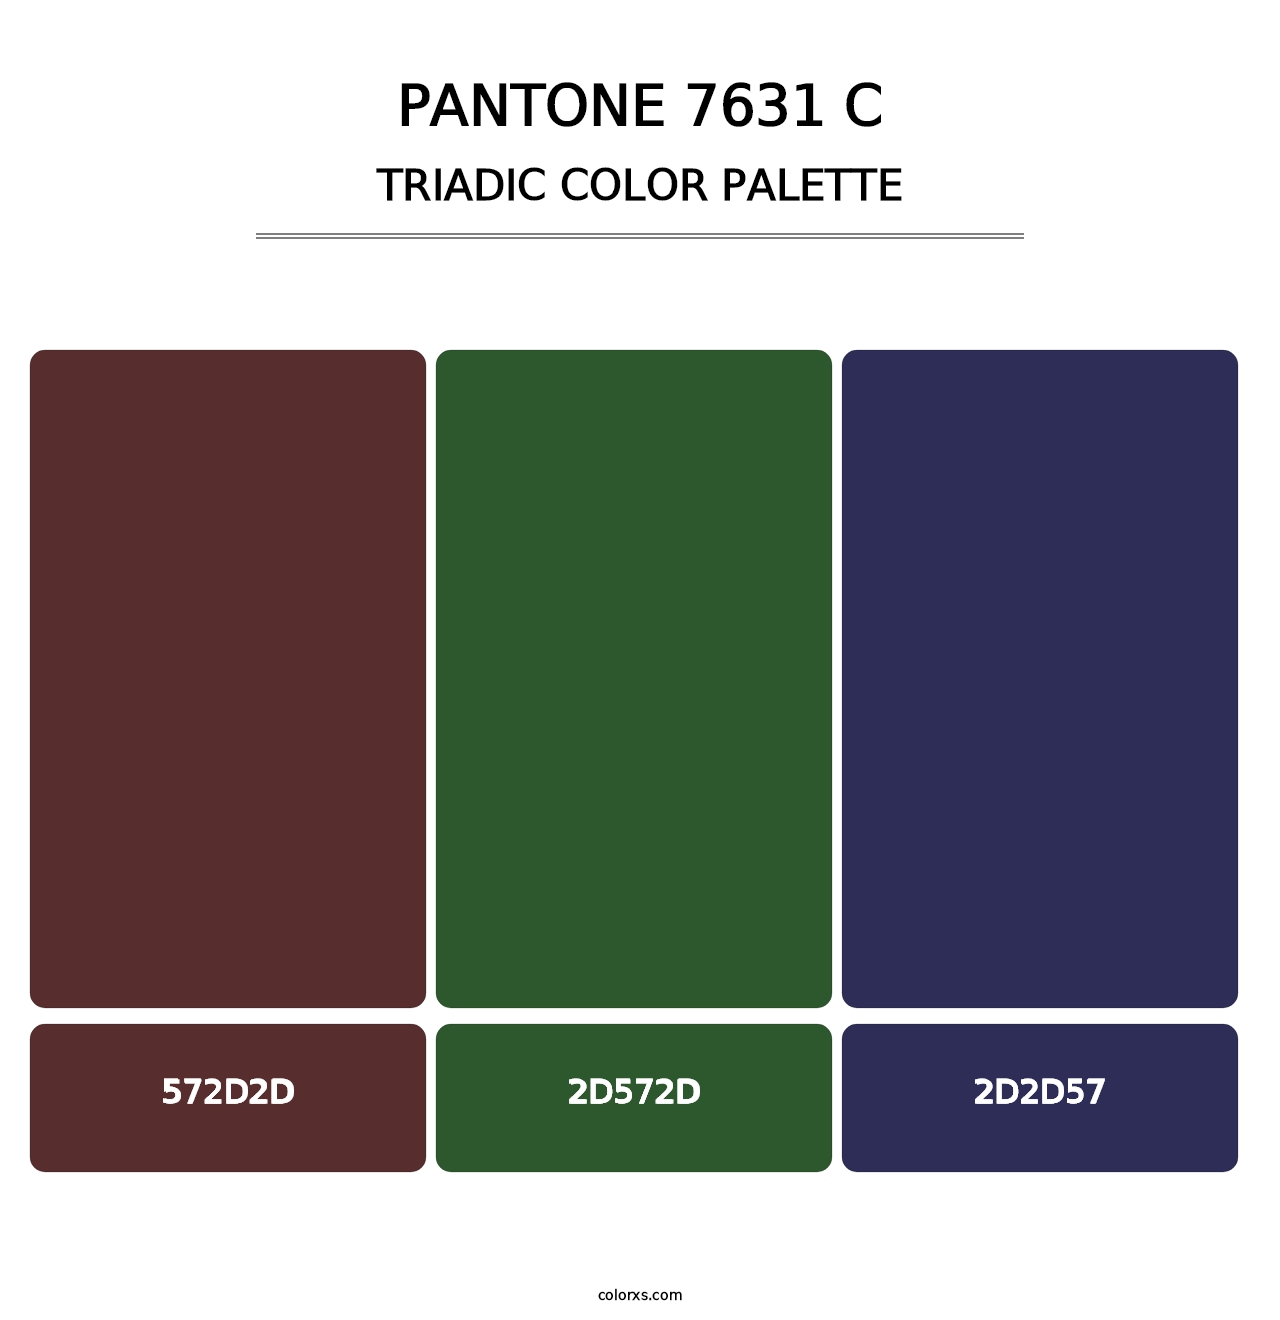 PANTONE 7631 C - Triadic Color Palette